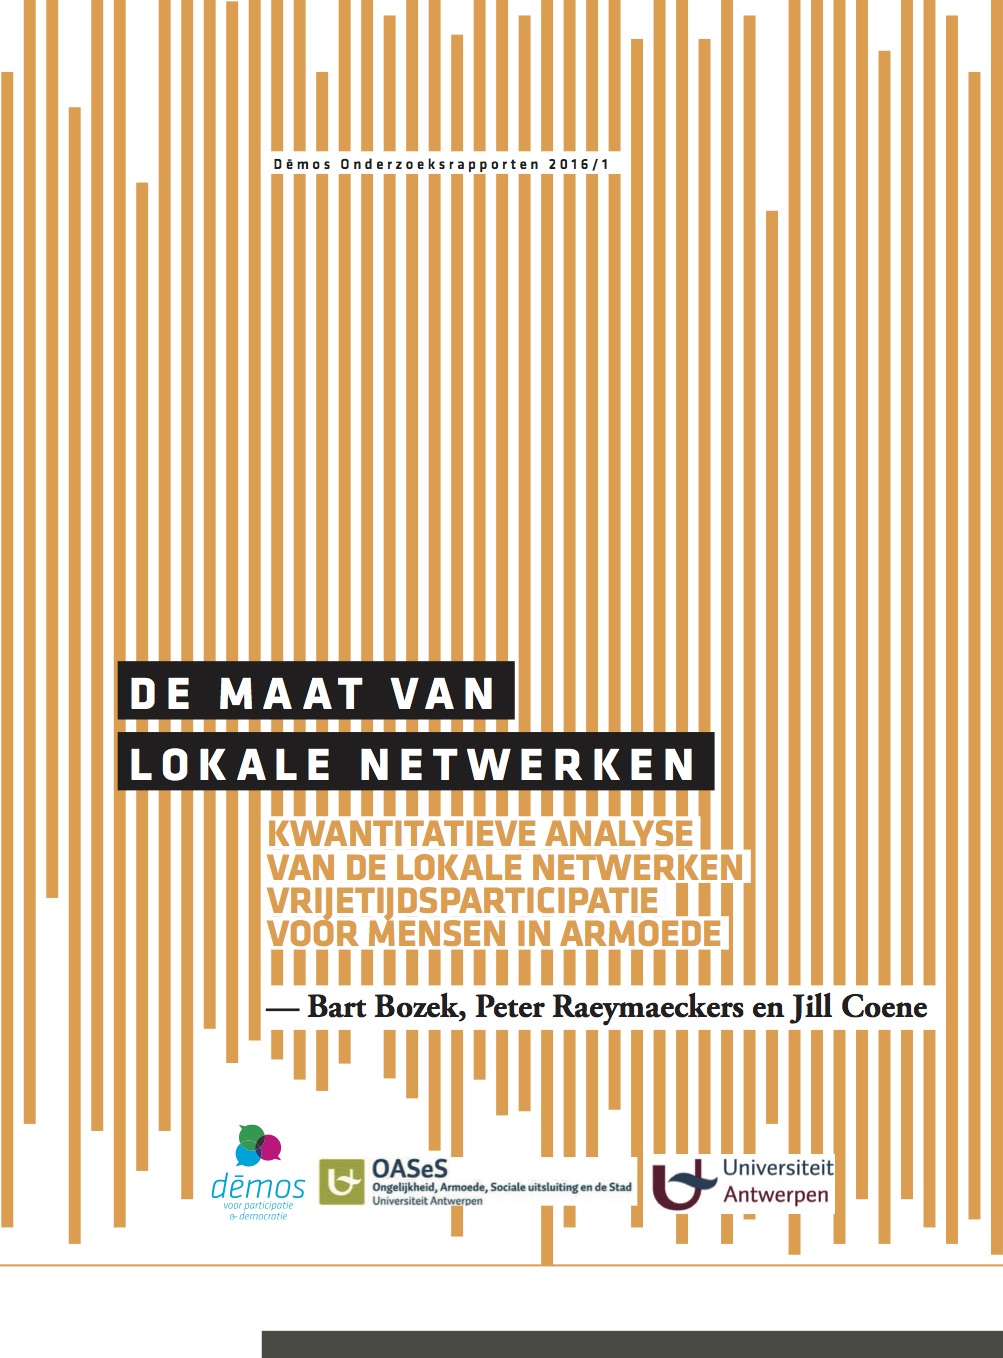 De maat van lokale netwerken. Kwantitatieve analyse van de lokale netwerken vrijetijdsparticipatie voor mensen in armoede